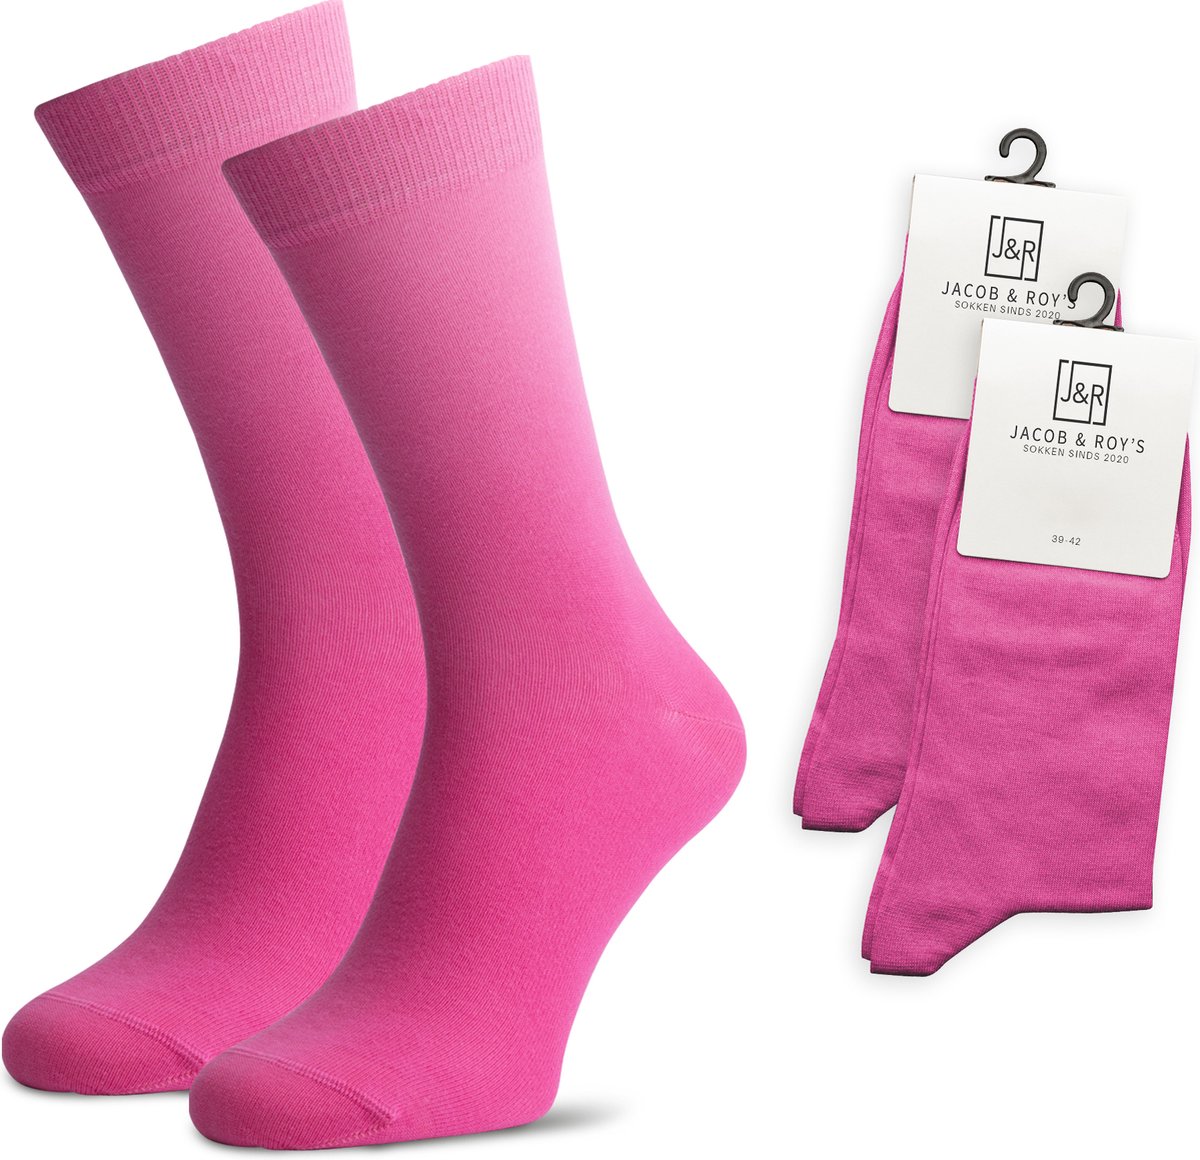 Jacob & Roy's 2 Paar Roze Sokken - Kousen - Heren & Dames - Leuke Sokken - Vrolijke Sokken - Grappige Sokken - Katoen - Maat 35-38 - Funny Socks - Gekleurde Sokken Waar Je Happy Van Wordt